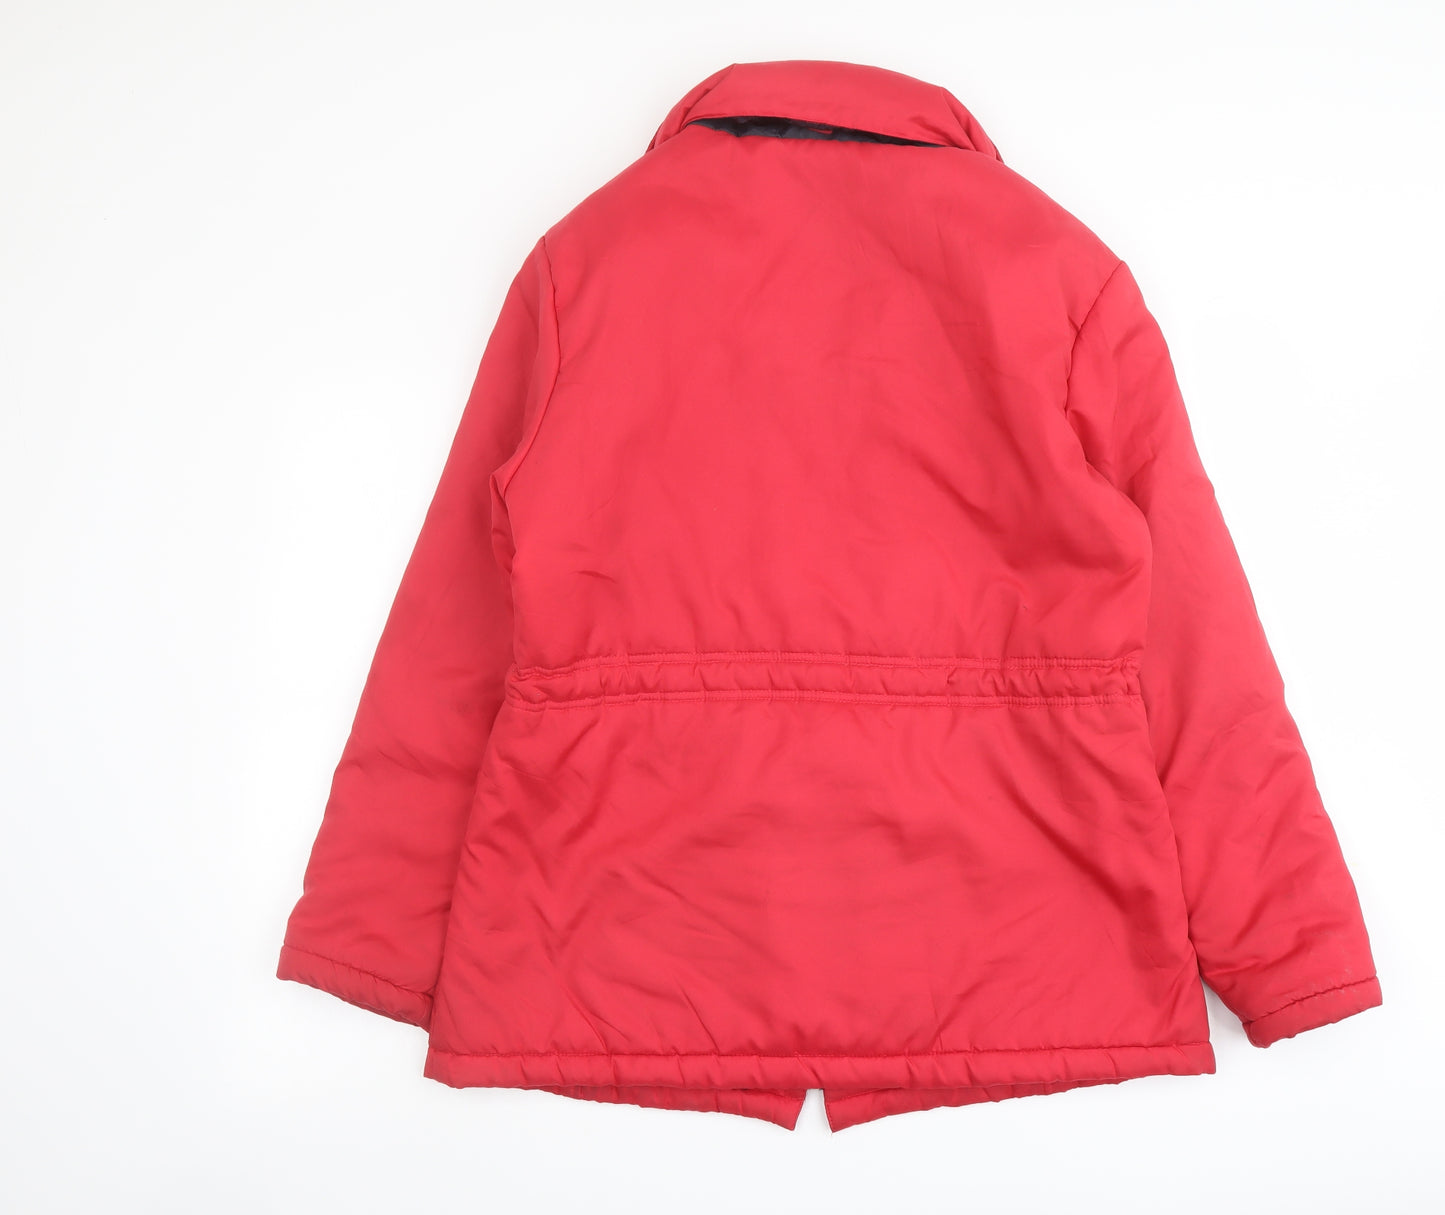 Anne De Lancay Womens Red Jacket Size M Zip